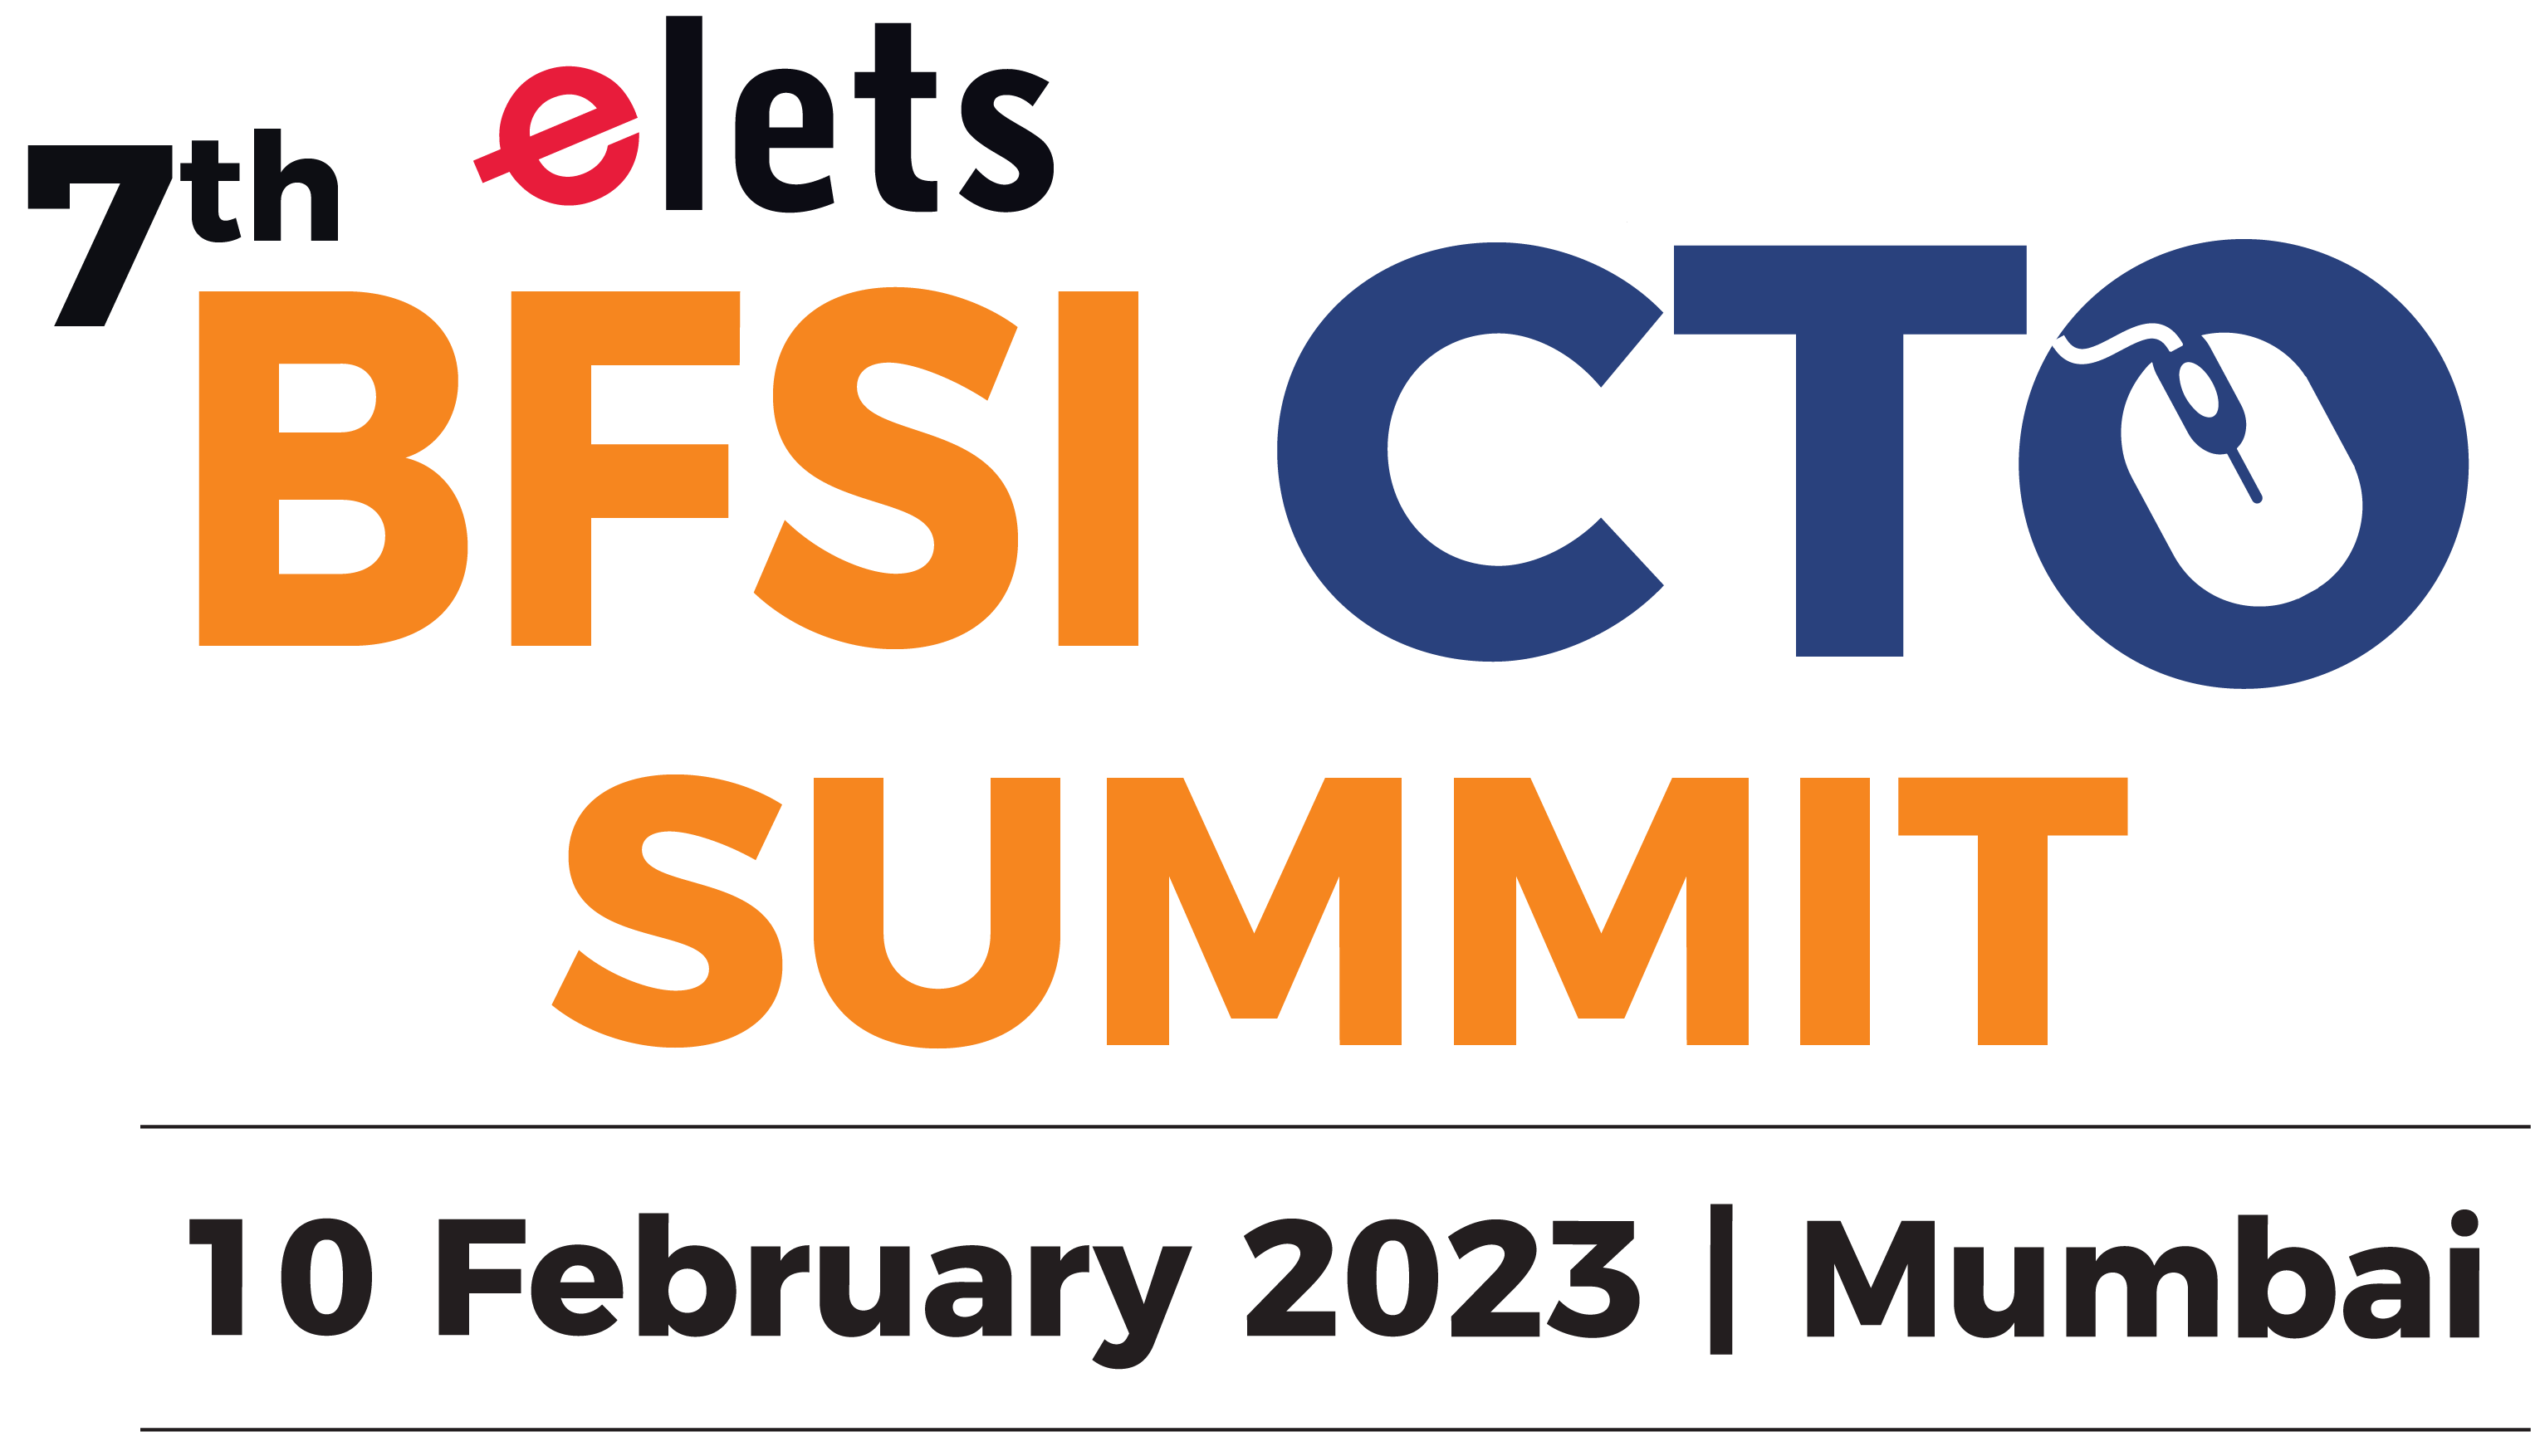  Elets 7th BFSI CTO Summit, Mumbai